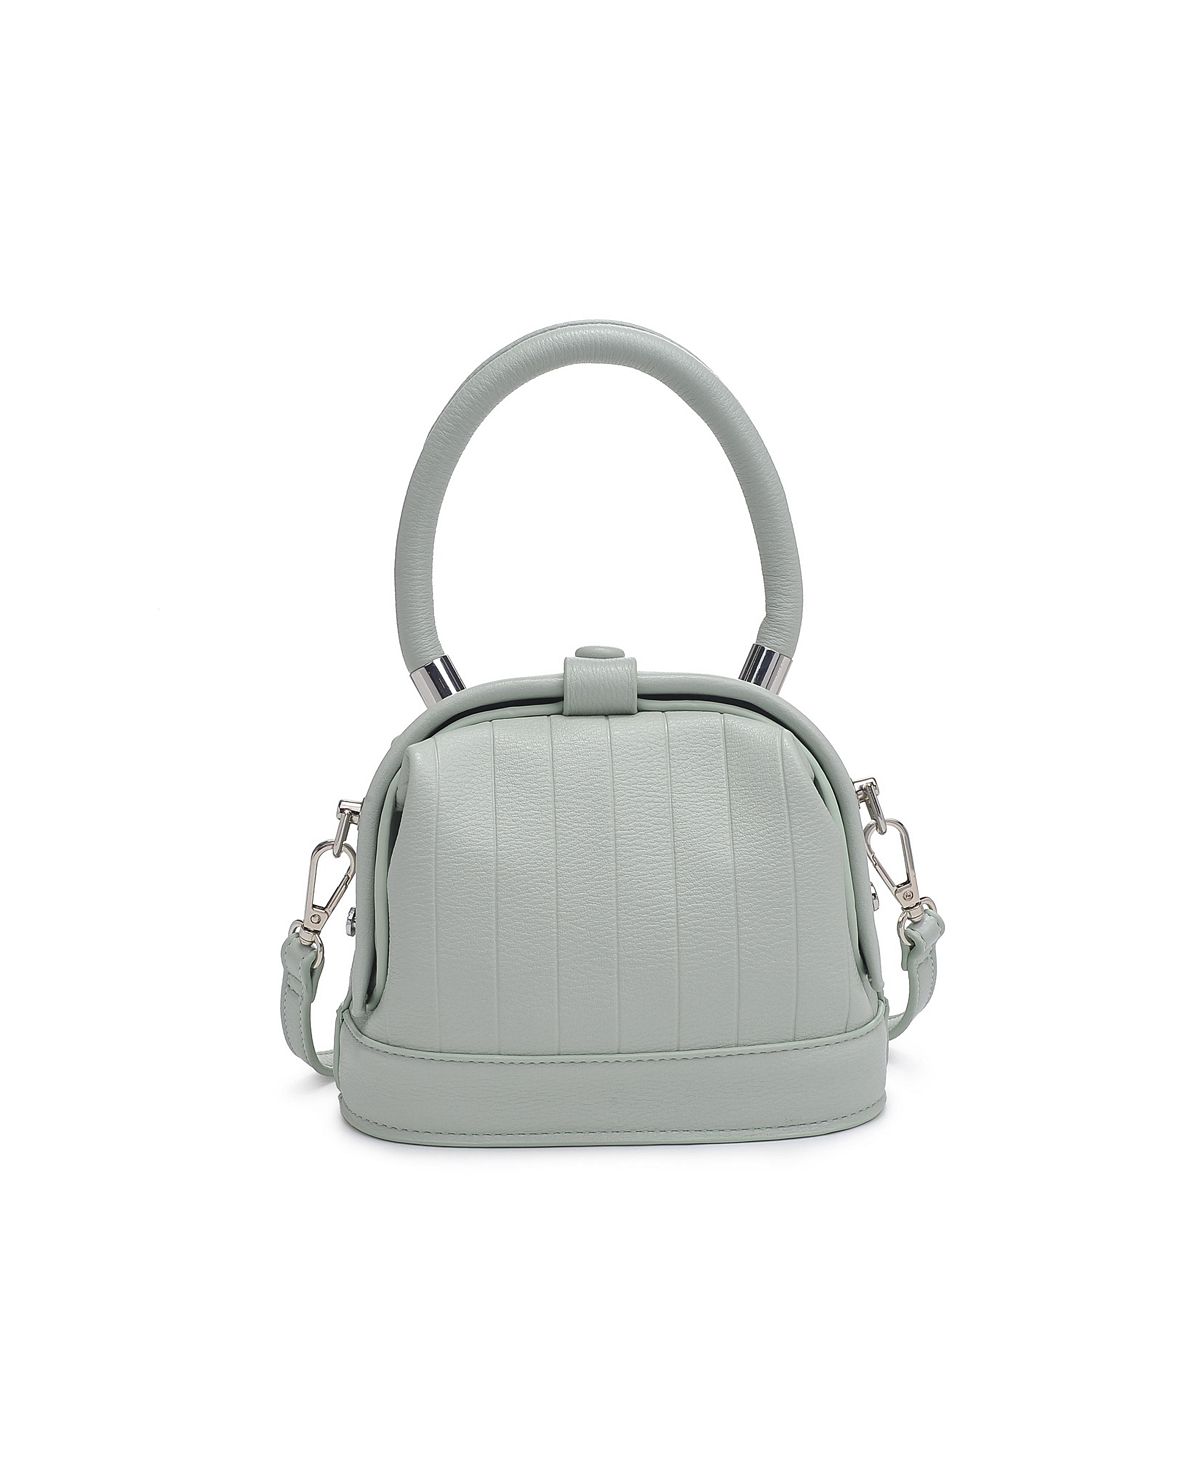 Миниатюрная сумка через плечо Charmain Moda Luxe миниатюрная сумка через плечо charmain moda luxe черный